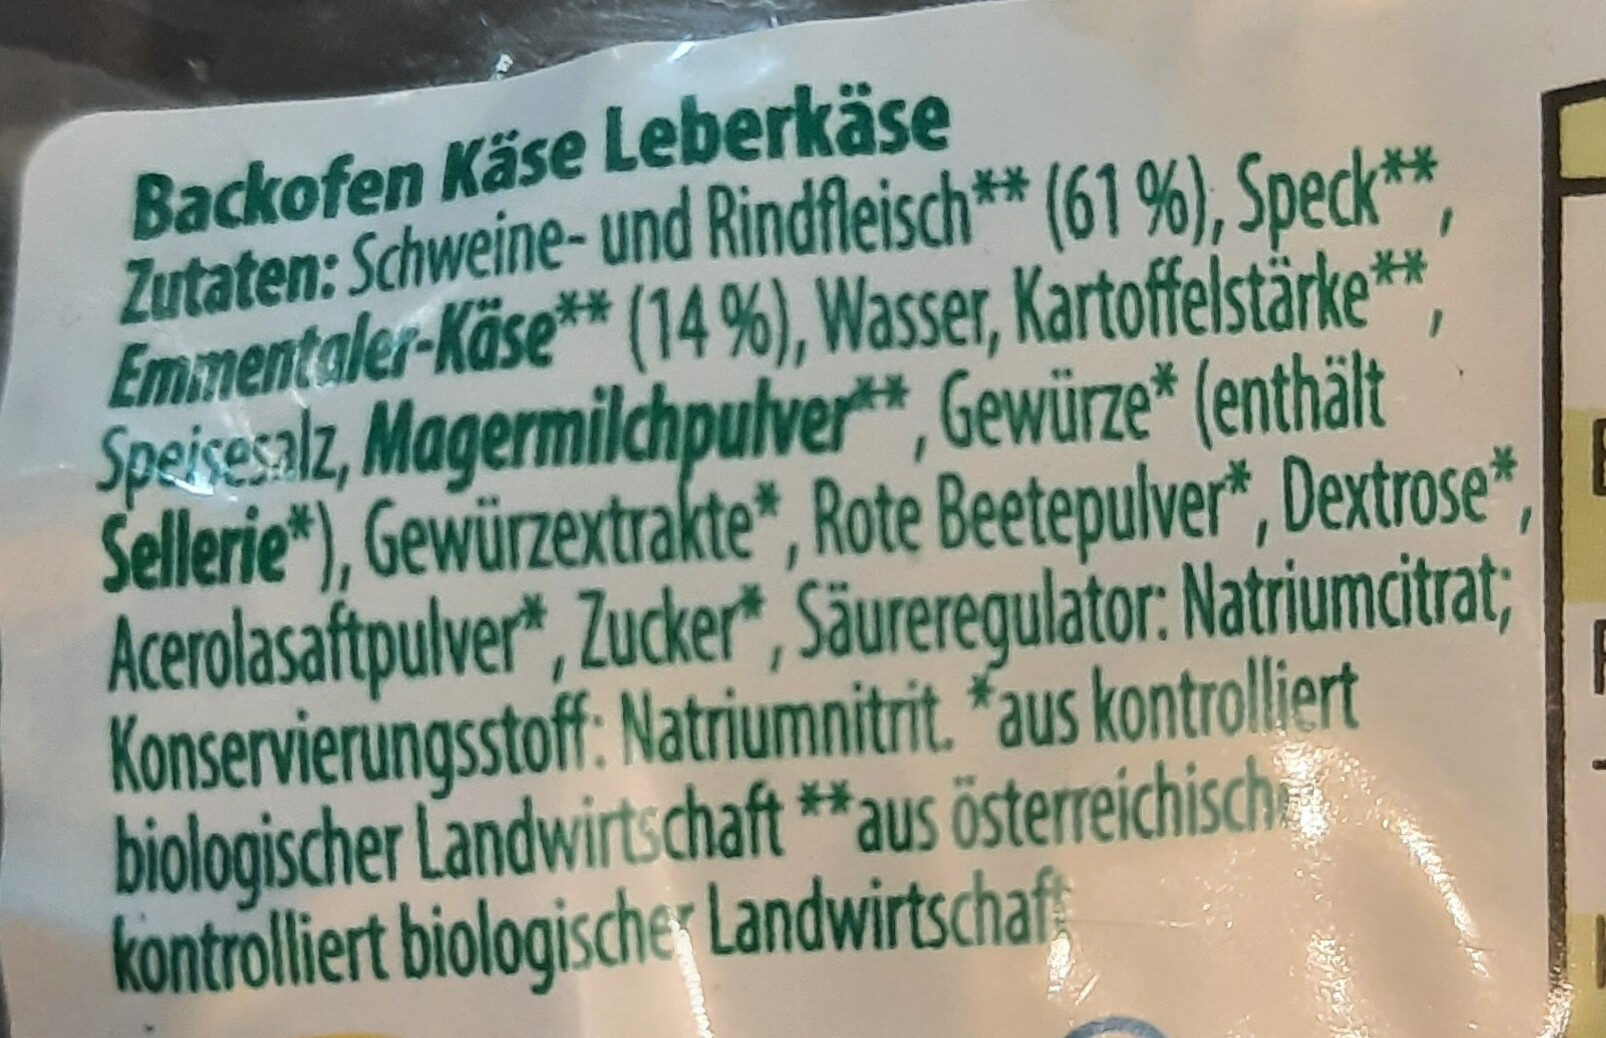 Backofen Käseleberkäse - Ingredients - de